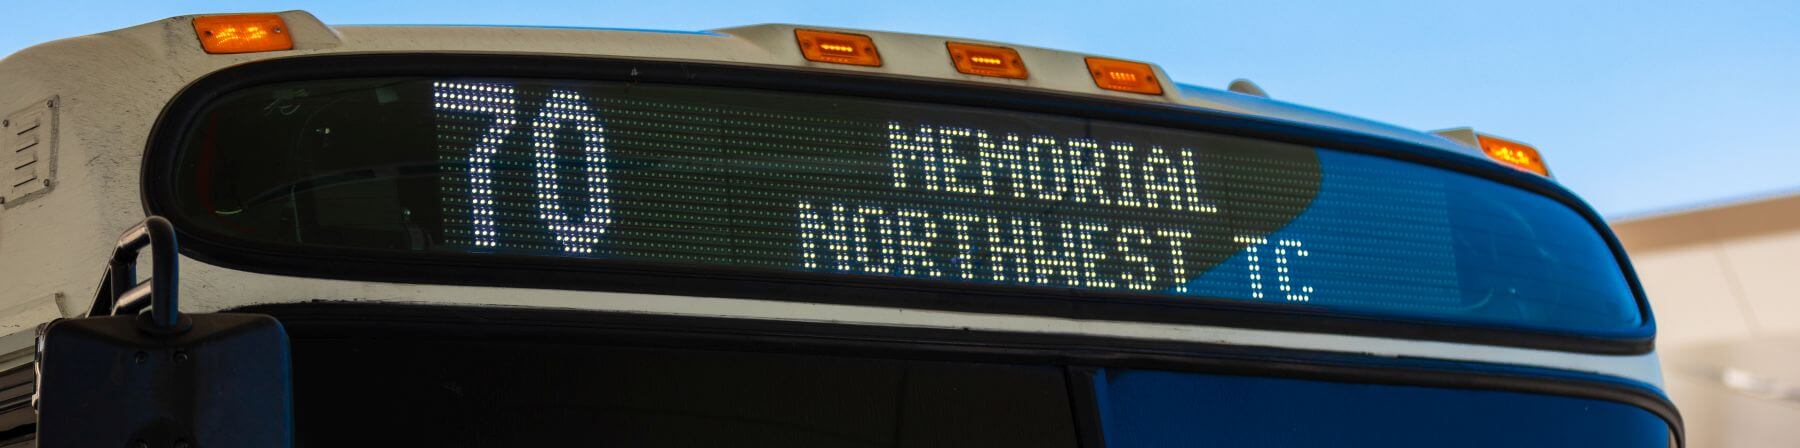 70 Memorial bus